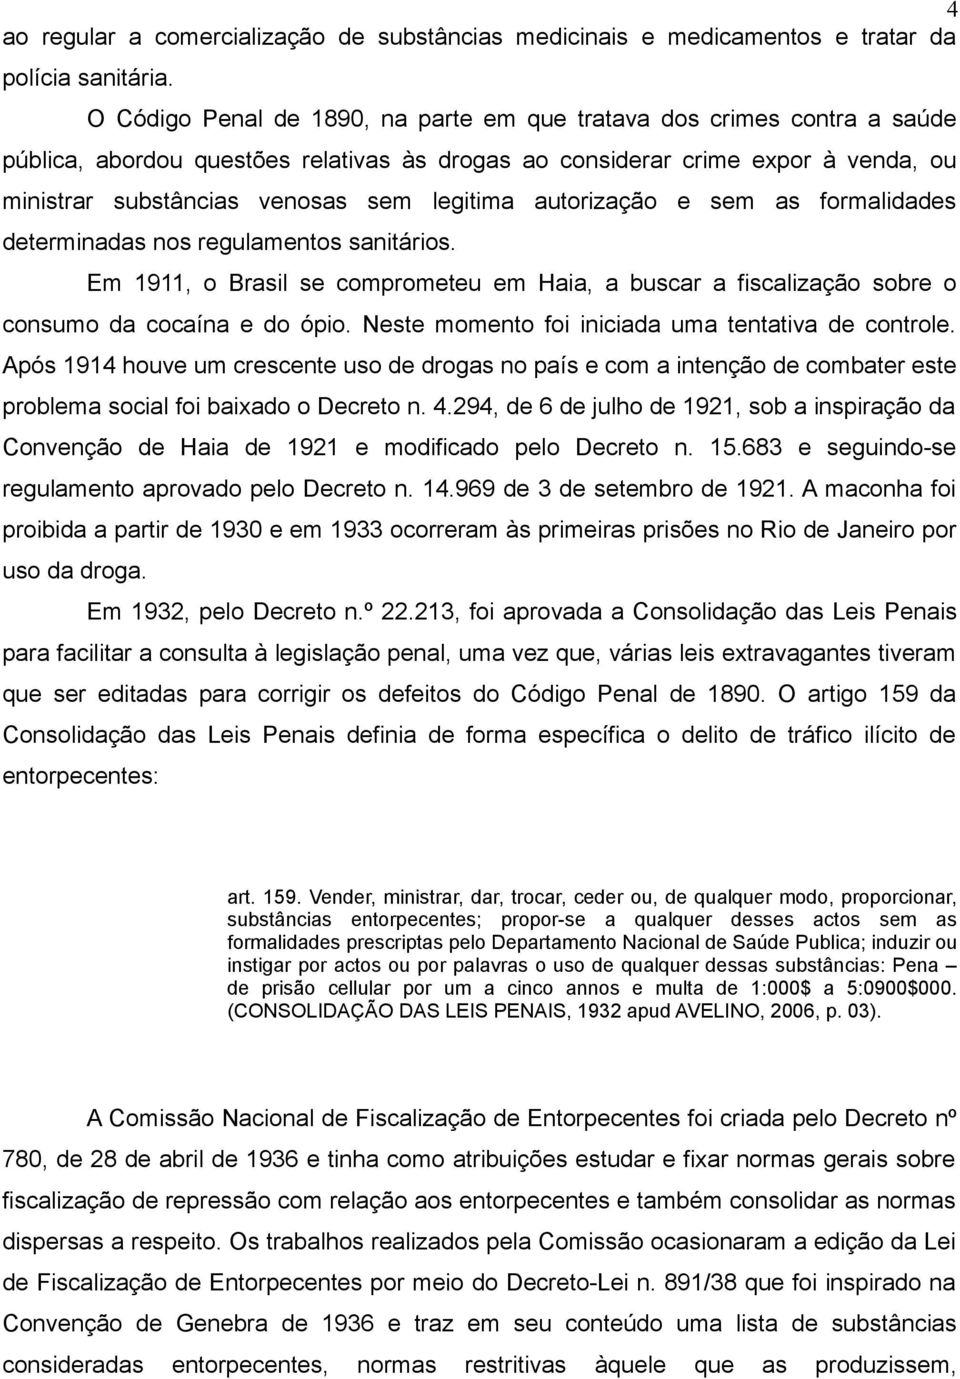 legitima autorização e sem as formalidades determinadas nos regulamentos sanitários. Em 1911, o Brasil se comprometeu em Haia, a buscar a fiscalização sobre o consumo da cocaína e do ópio.